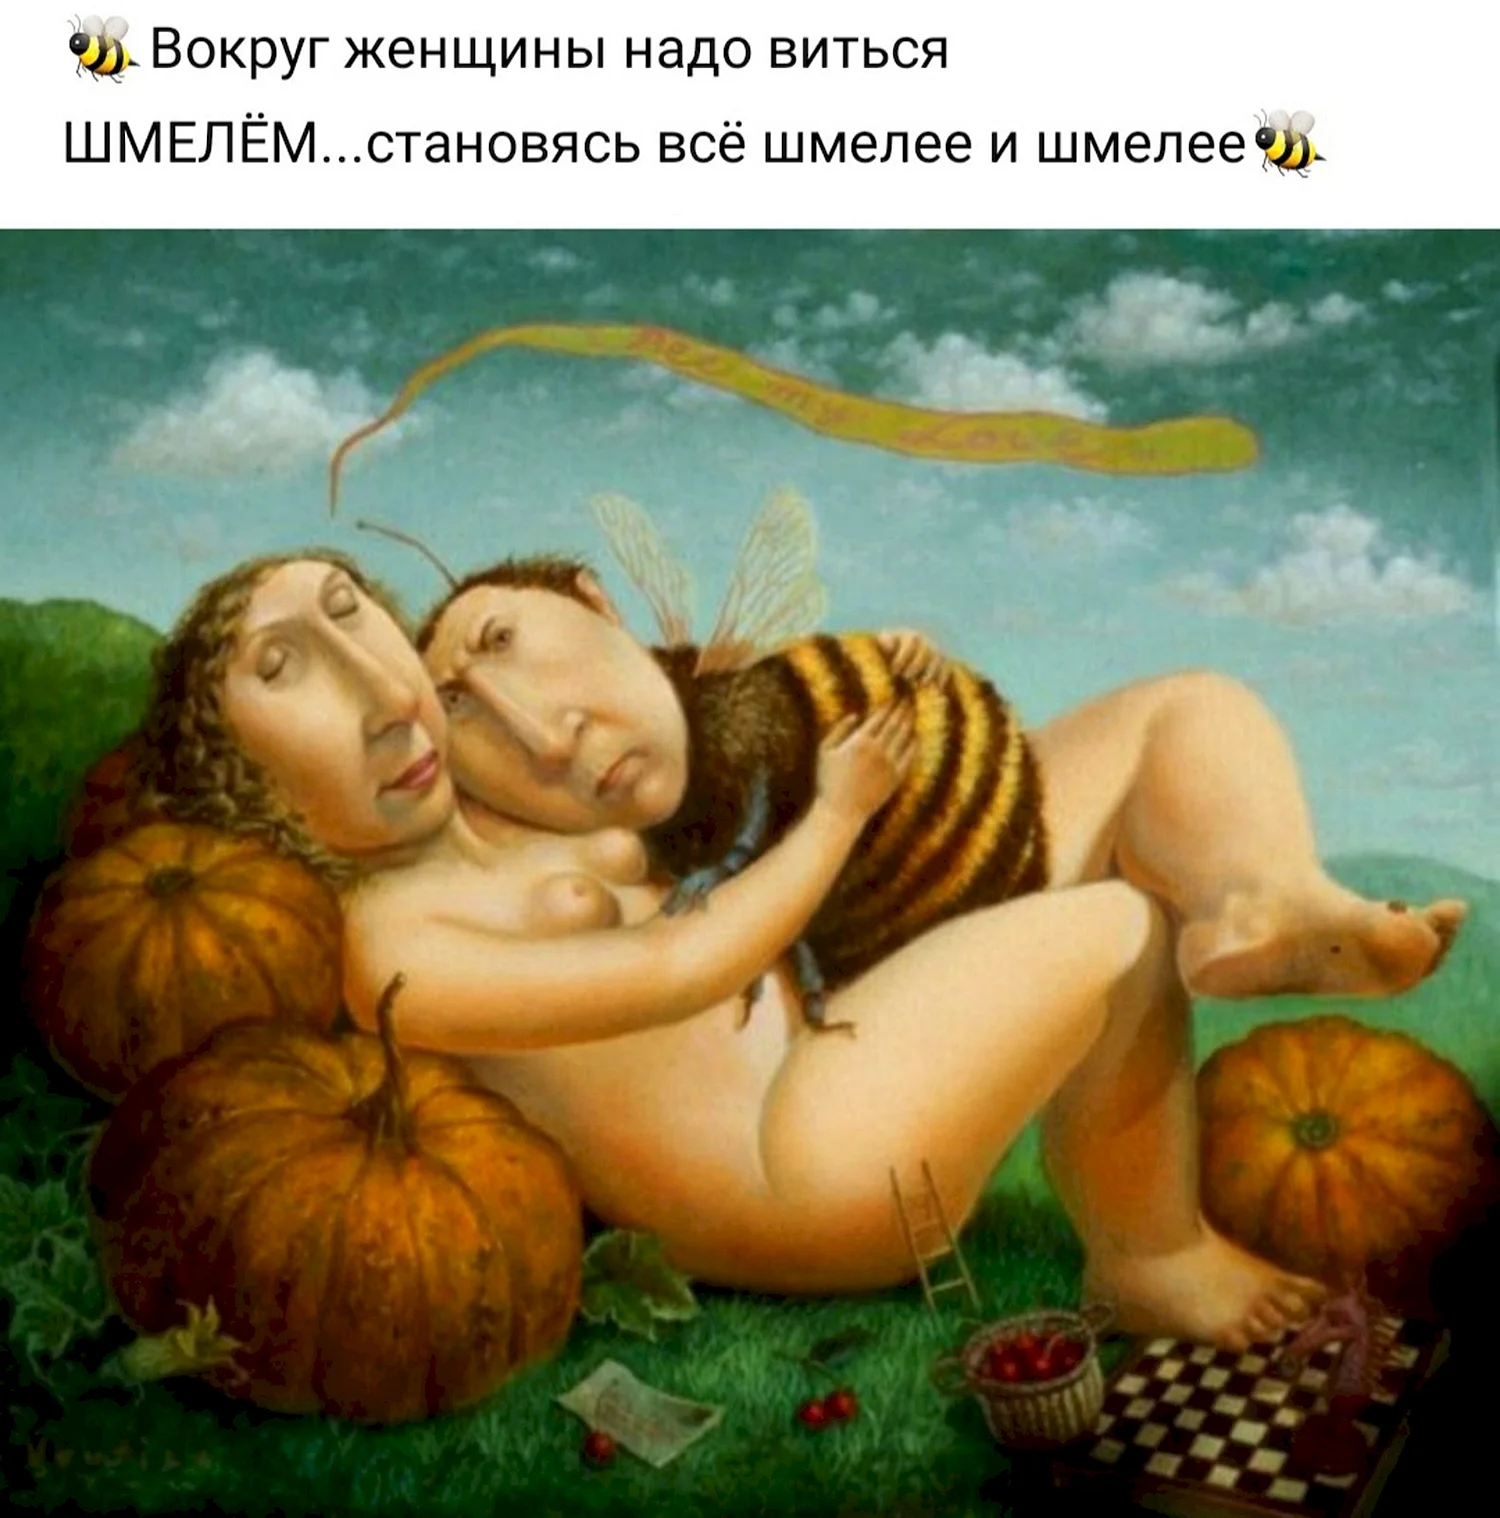 Путин краб Медведев Шмель а Ленин гриб